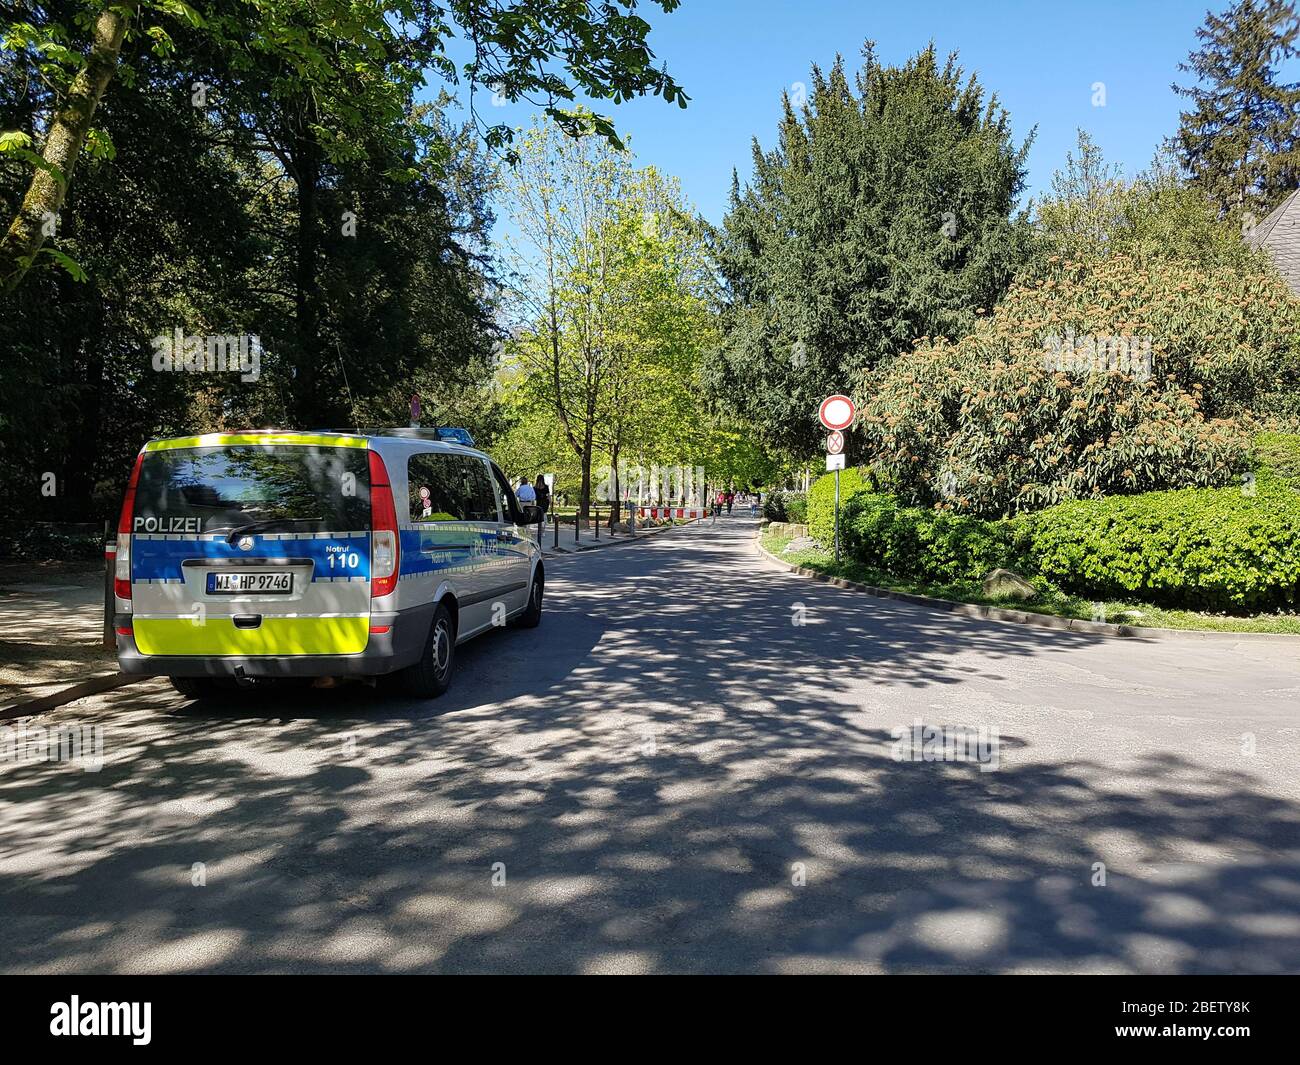 Véhicule de police debout / conduite dans le parc ( Grüneburgpark ) sur arrêt et recherche patrouille pour contrôler le virus corona covid-19 verrouillage / distance sociale Banque D'Images